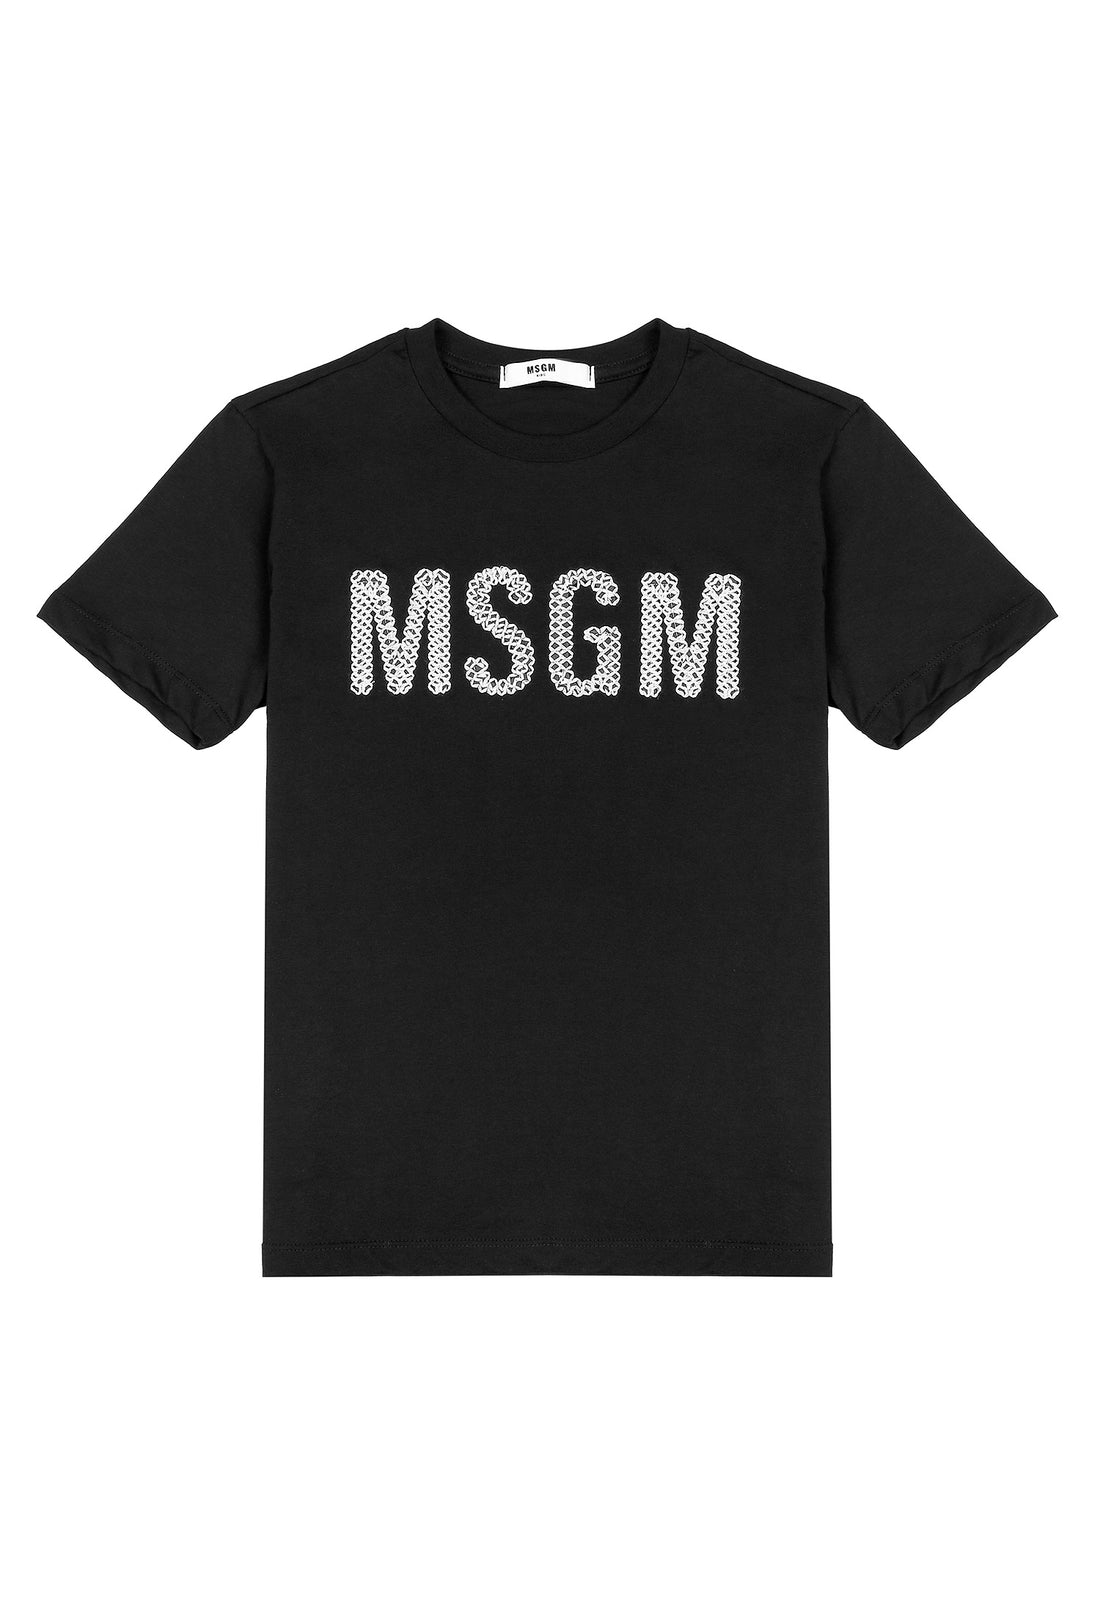 T-shirt materiał czarny łączony MSGM 123 9580 123/92c